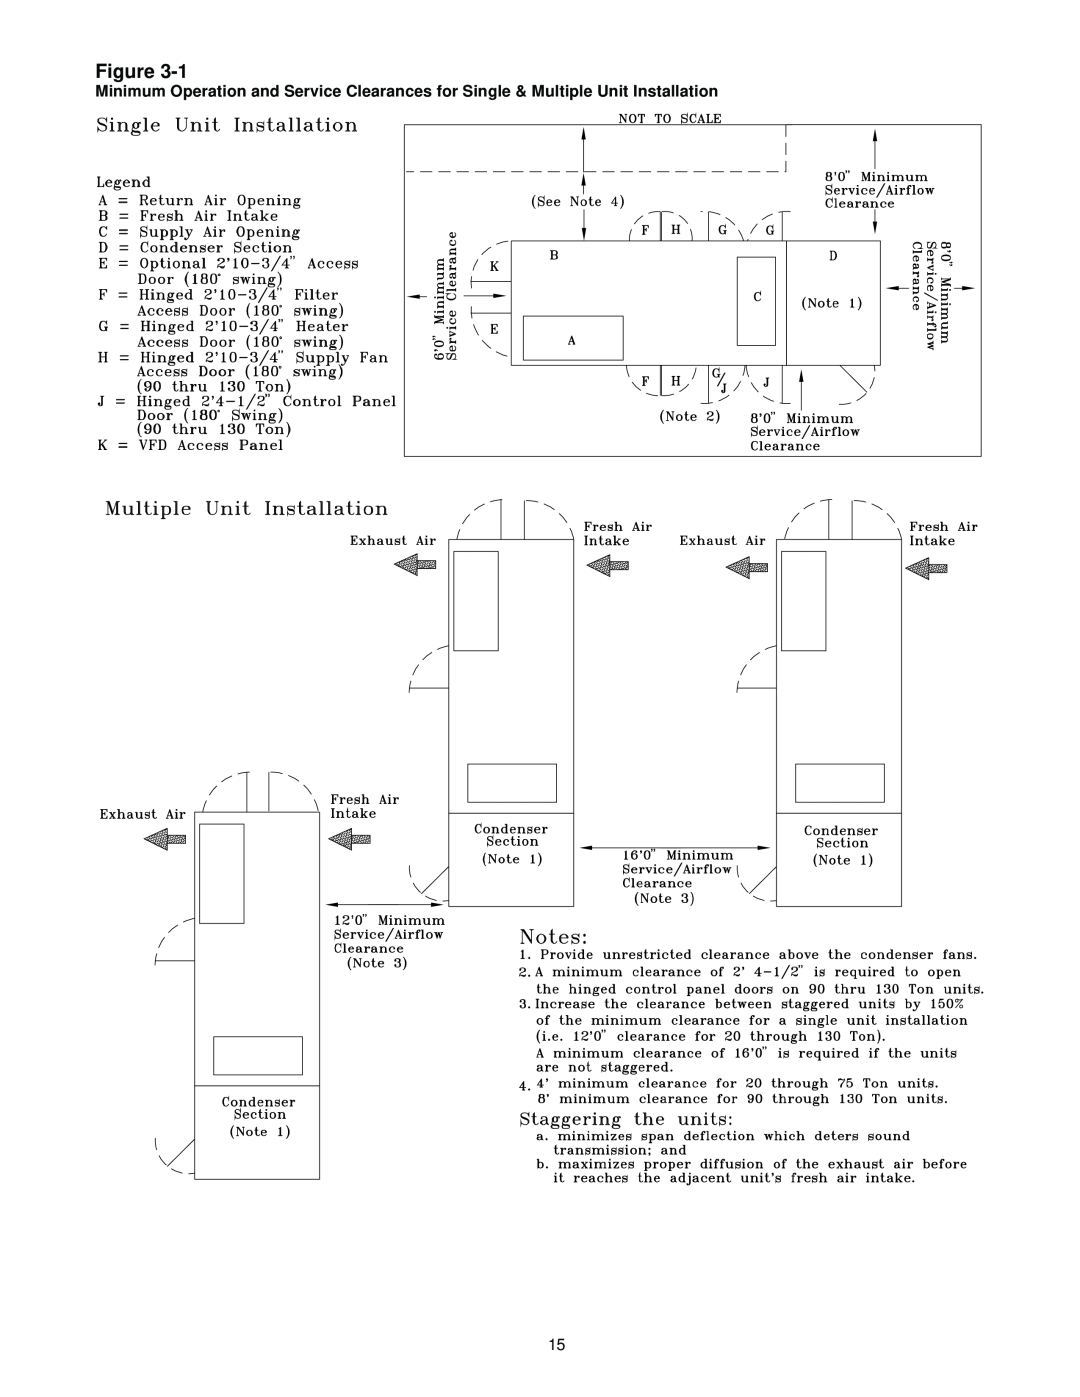 Trane RT-SVX10C-EN specifications Figure 